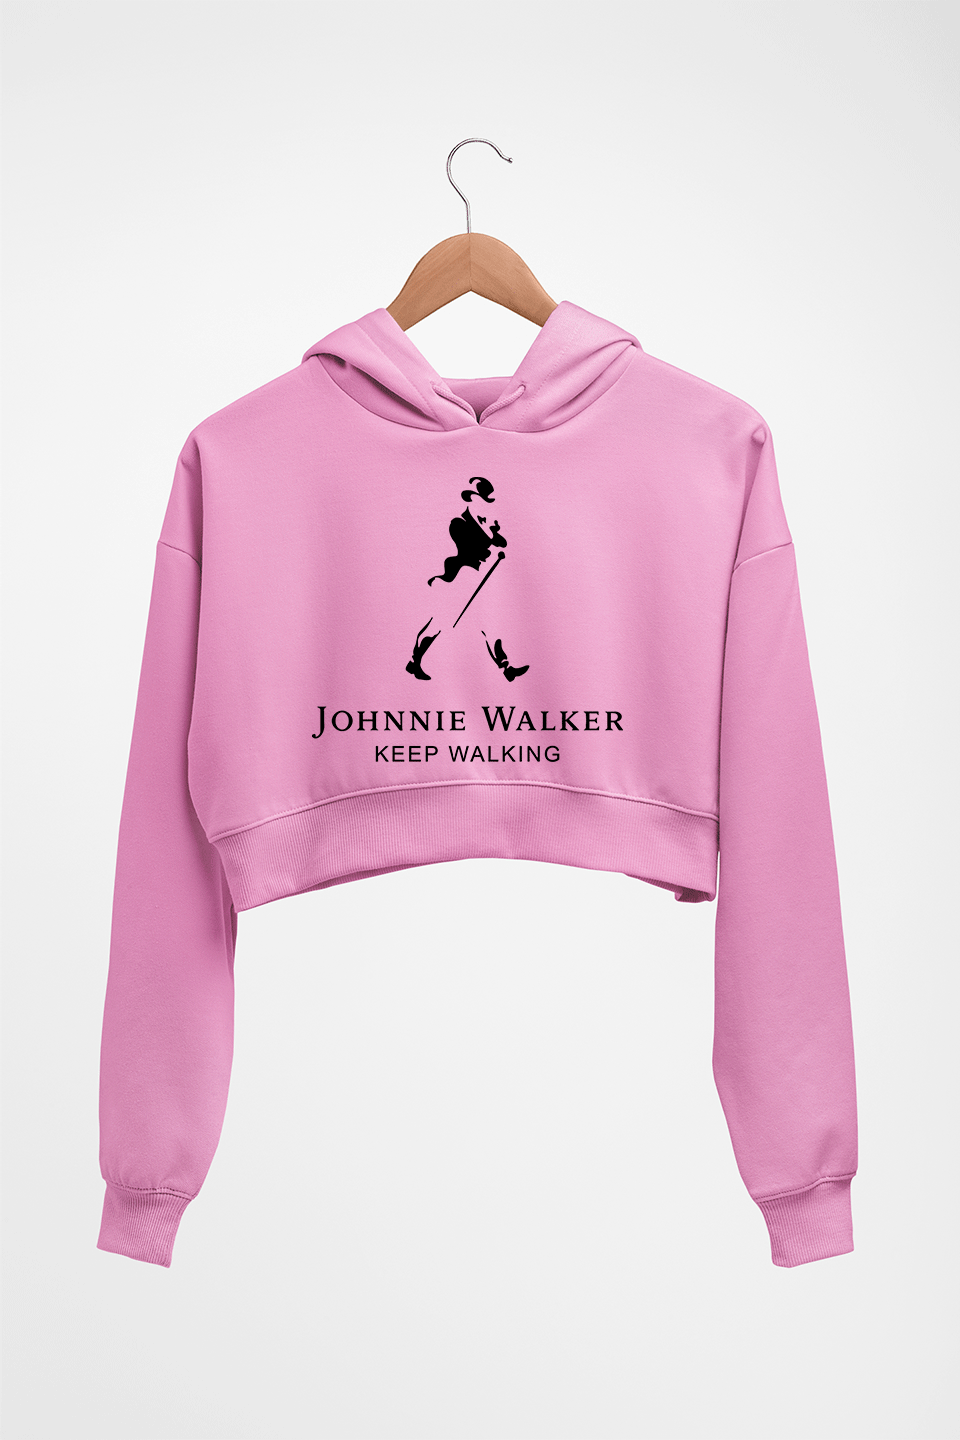 Johnnie Walker Crop HOODIE FOR WOMEN